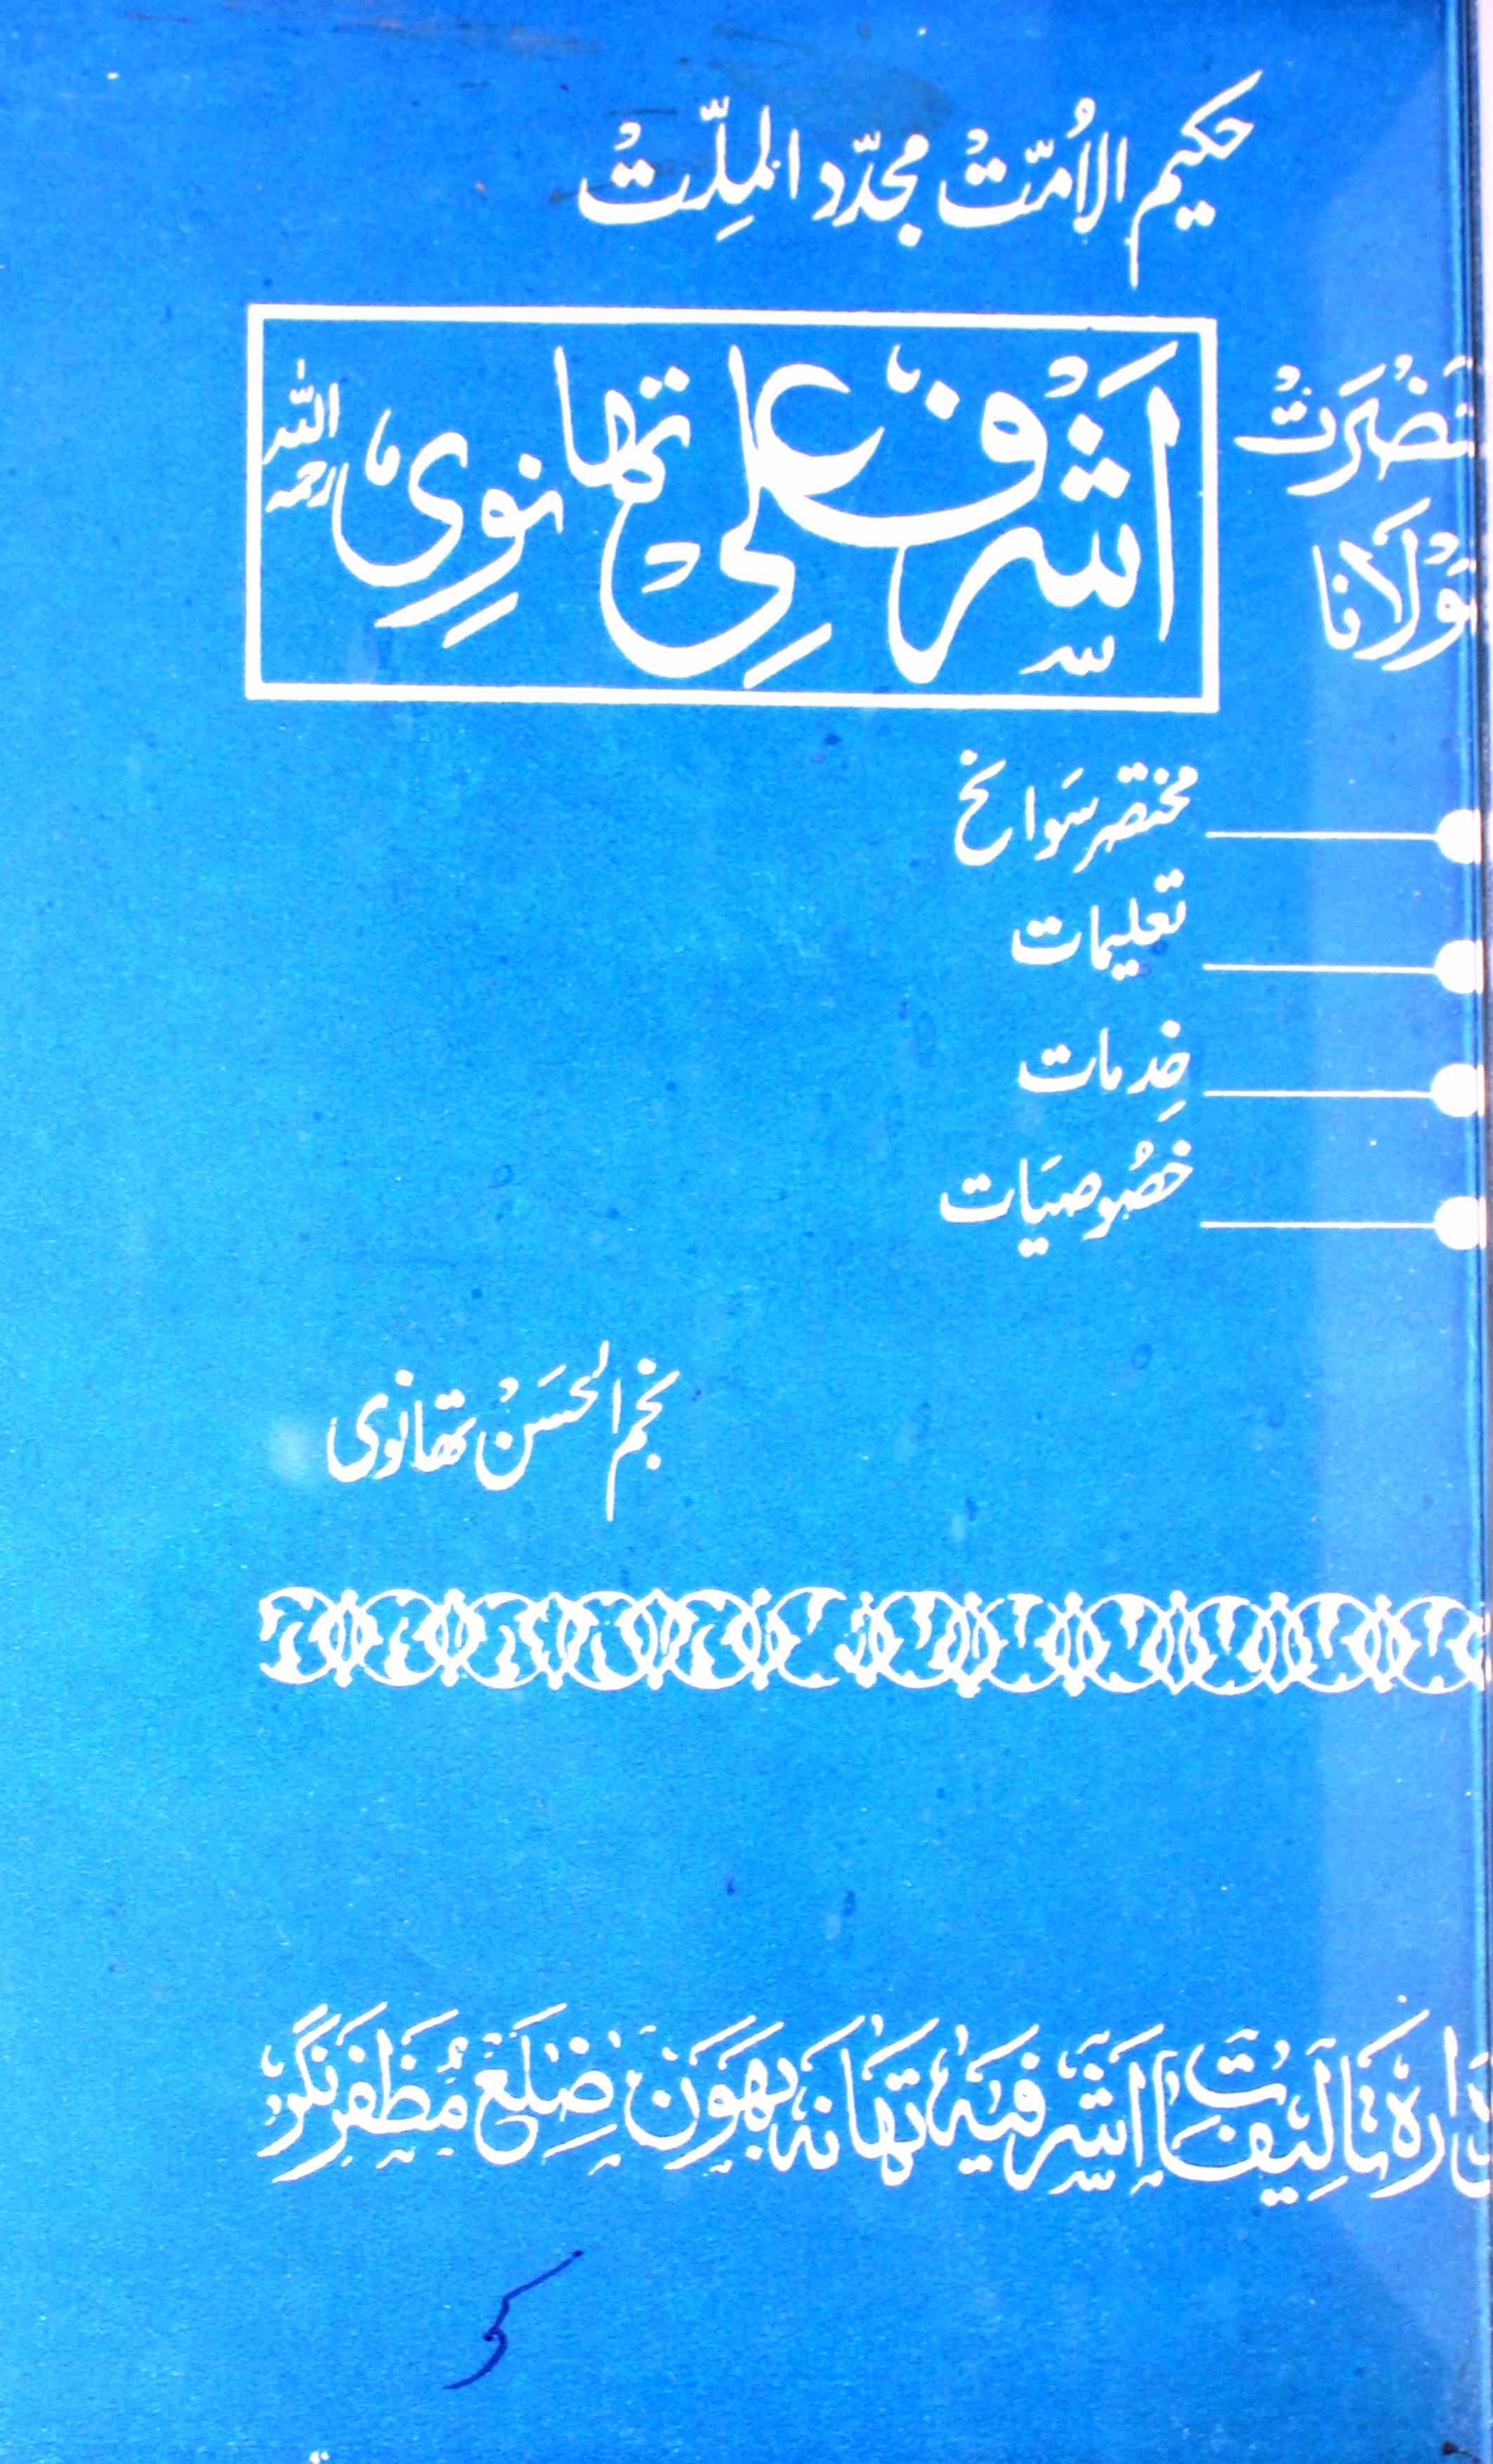 Hazrat Maulana Ashraf Ali Thanvi